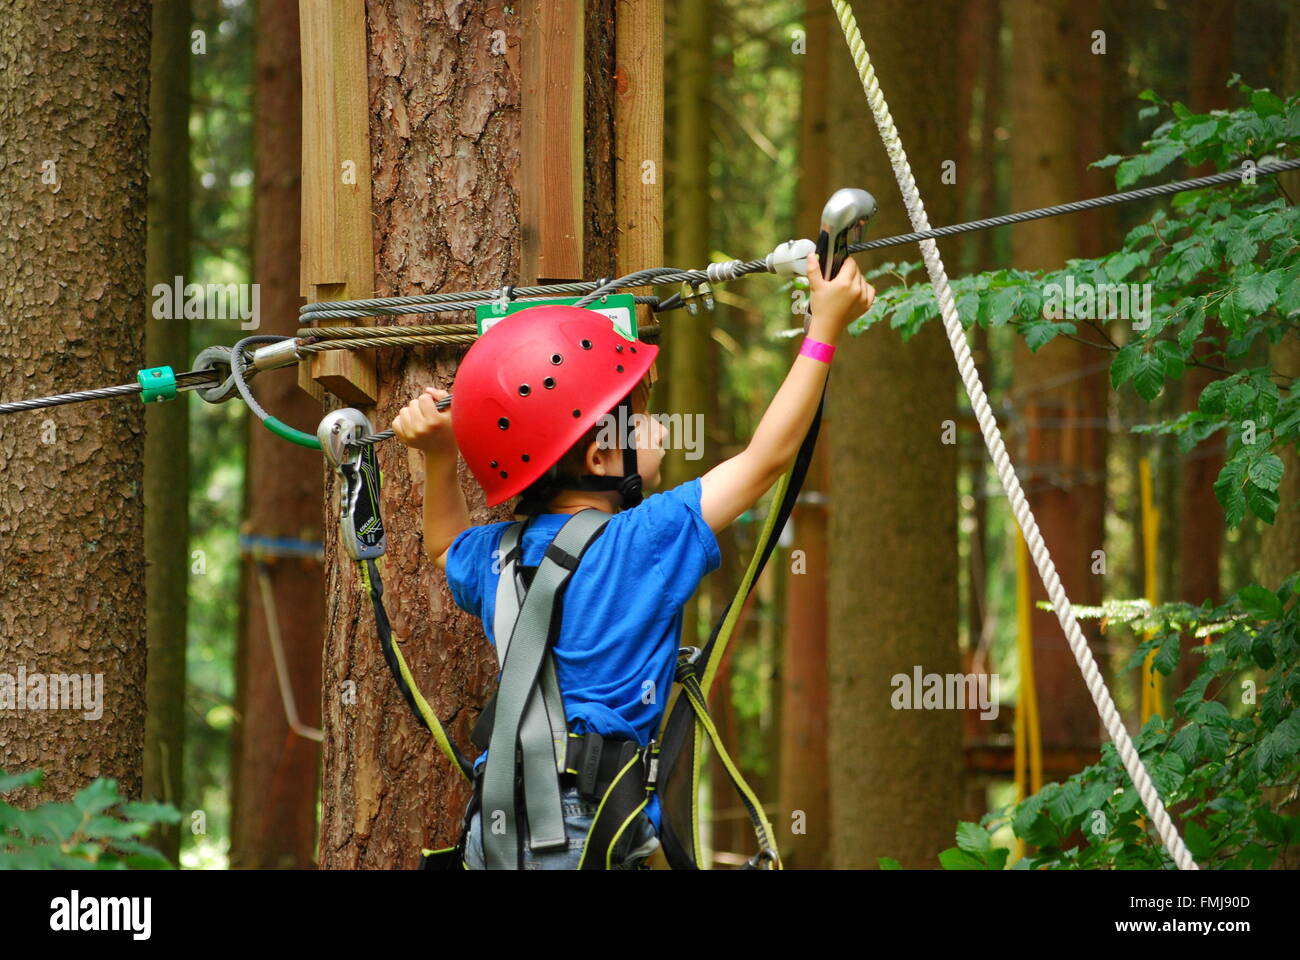 Un garçon la corde de sécurité crochets pour un nouveau fil dans un parcours de corde Banque D'Images